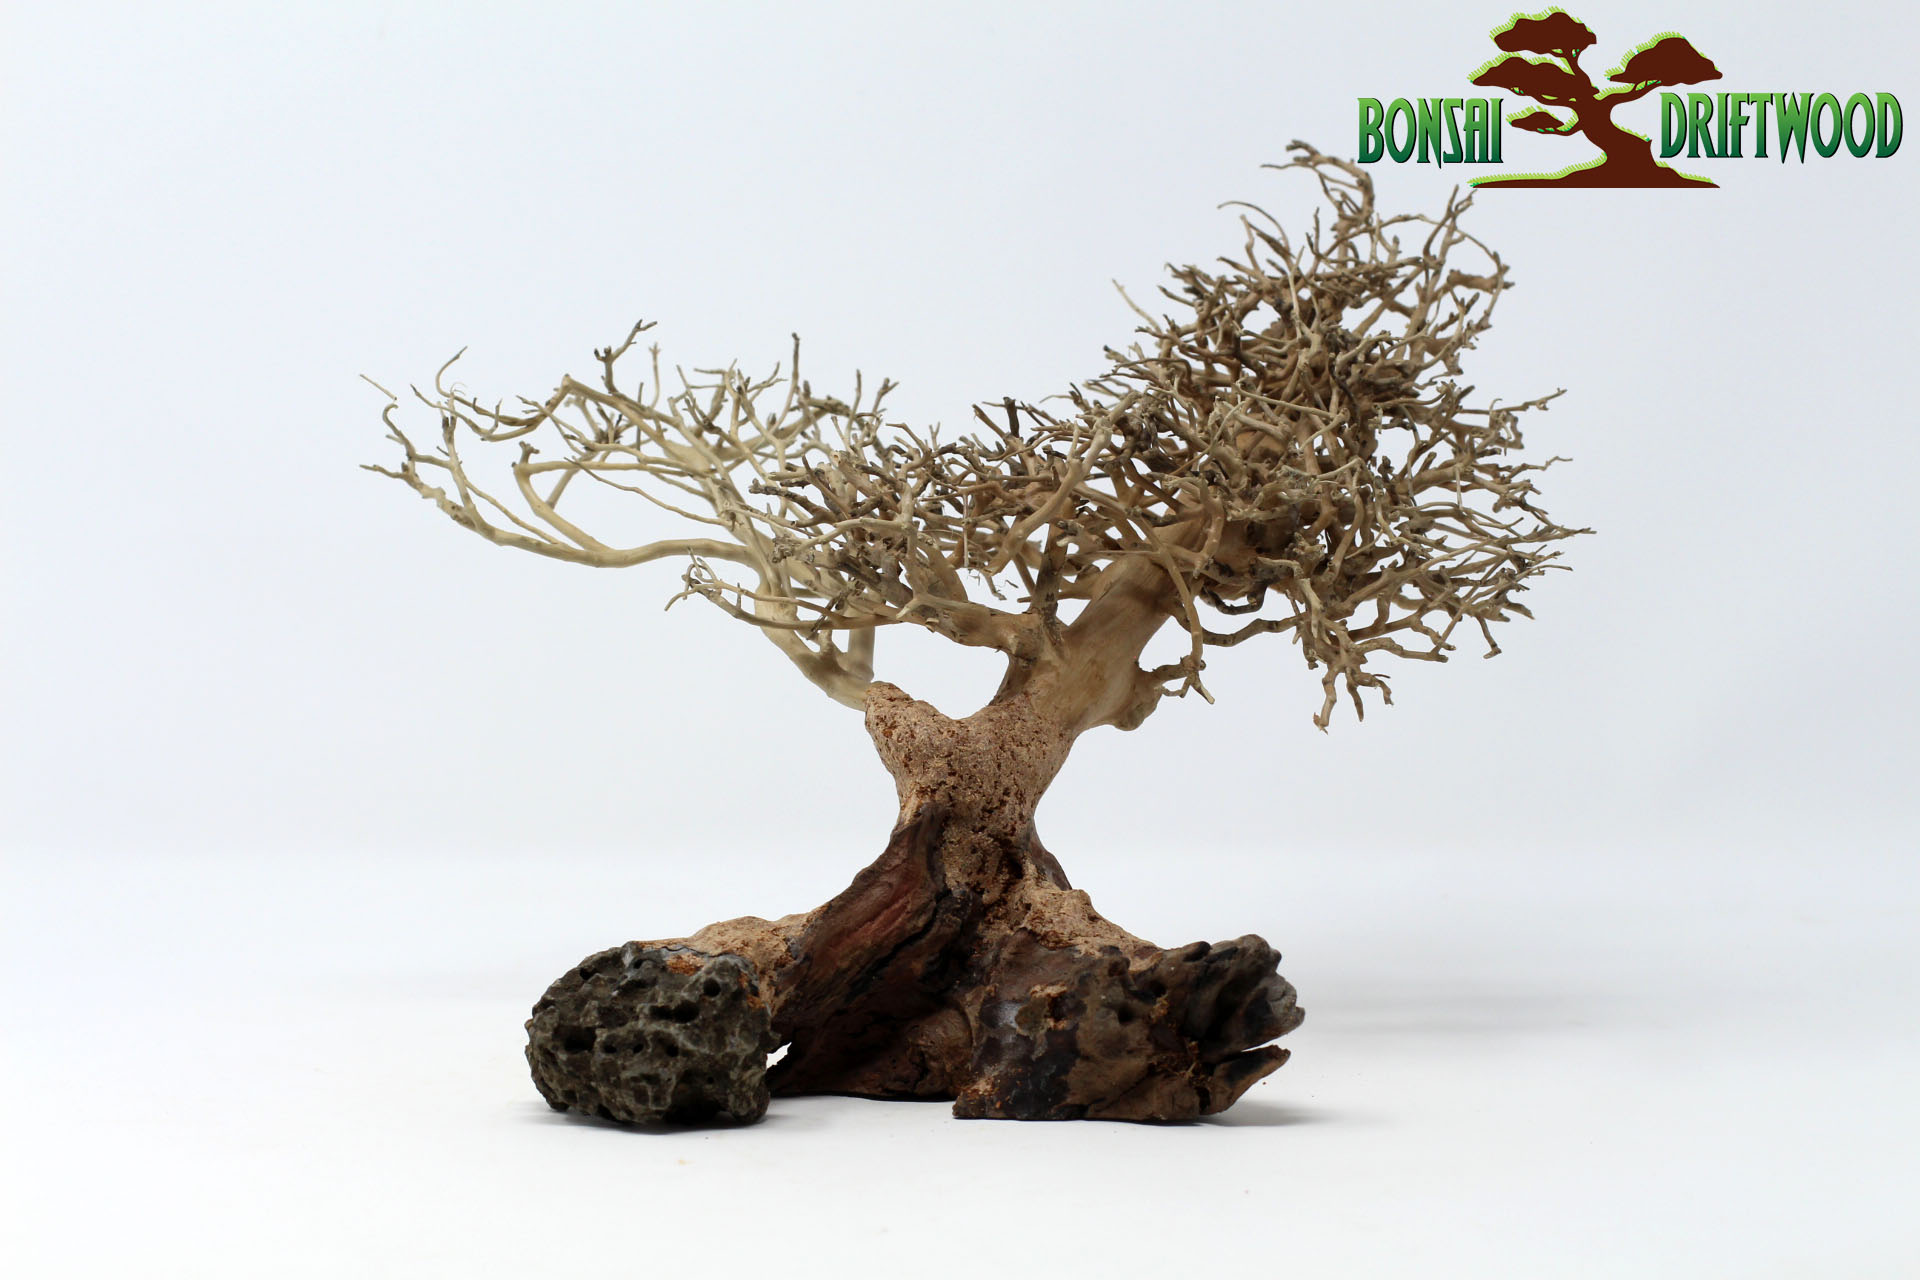 Một mẫu Bonsai driftwood natural tái chế từ các mẩu gỗ nhỏ, đẹp, độc, lạ được rao bán trên website https://bonsaidriftwood.com/ với giá 42$